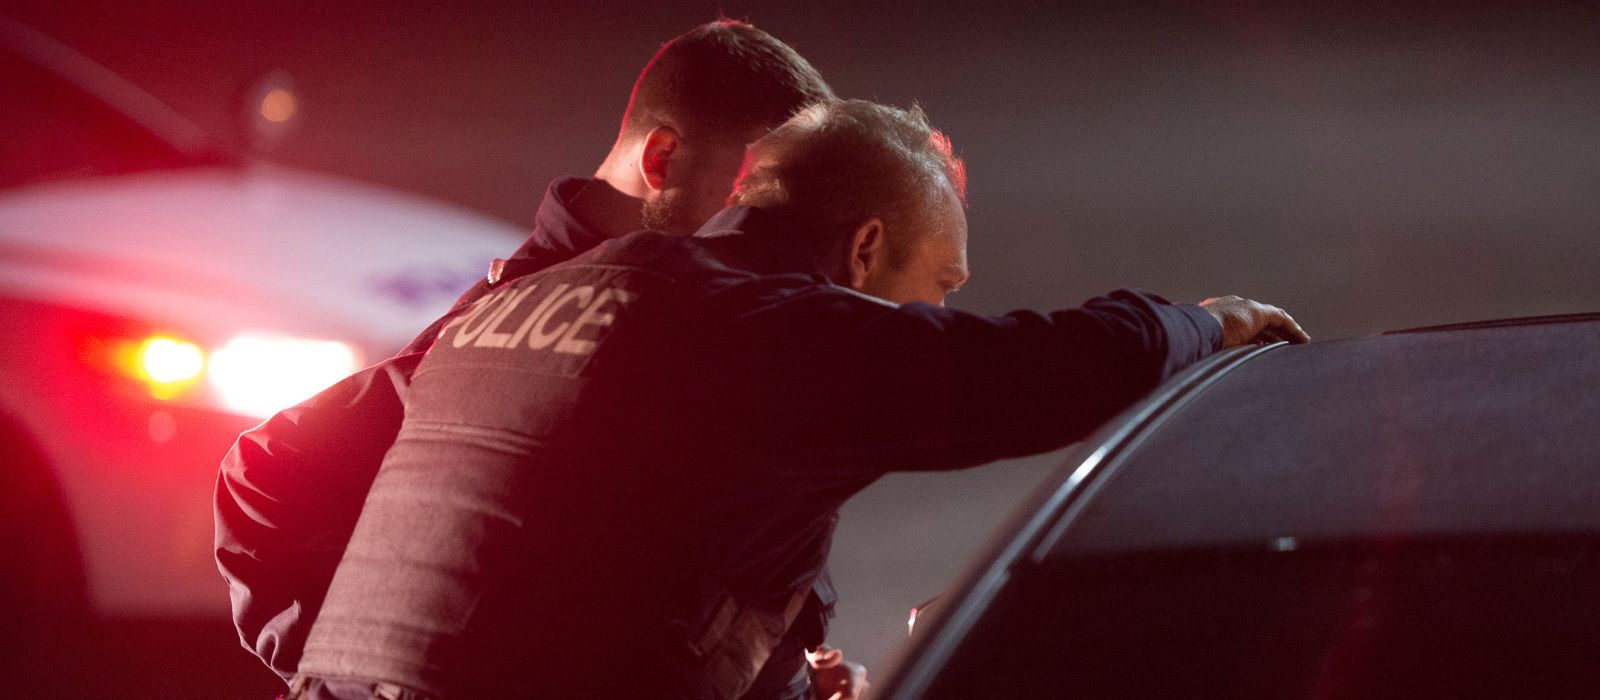 Deux membres du Service de police d'Ottawa parlent à une personne dans un véhicule.